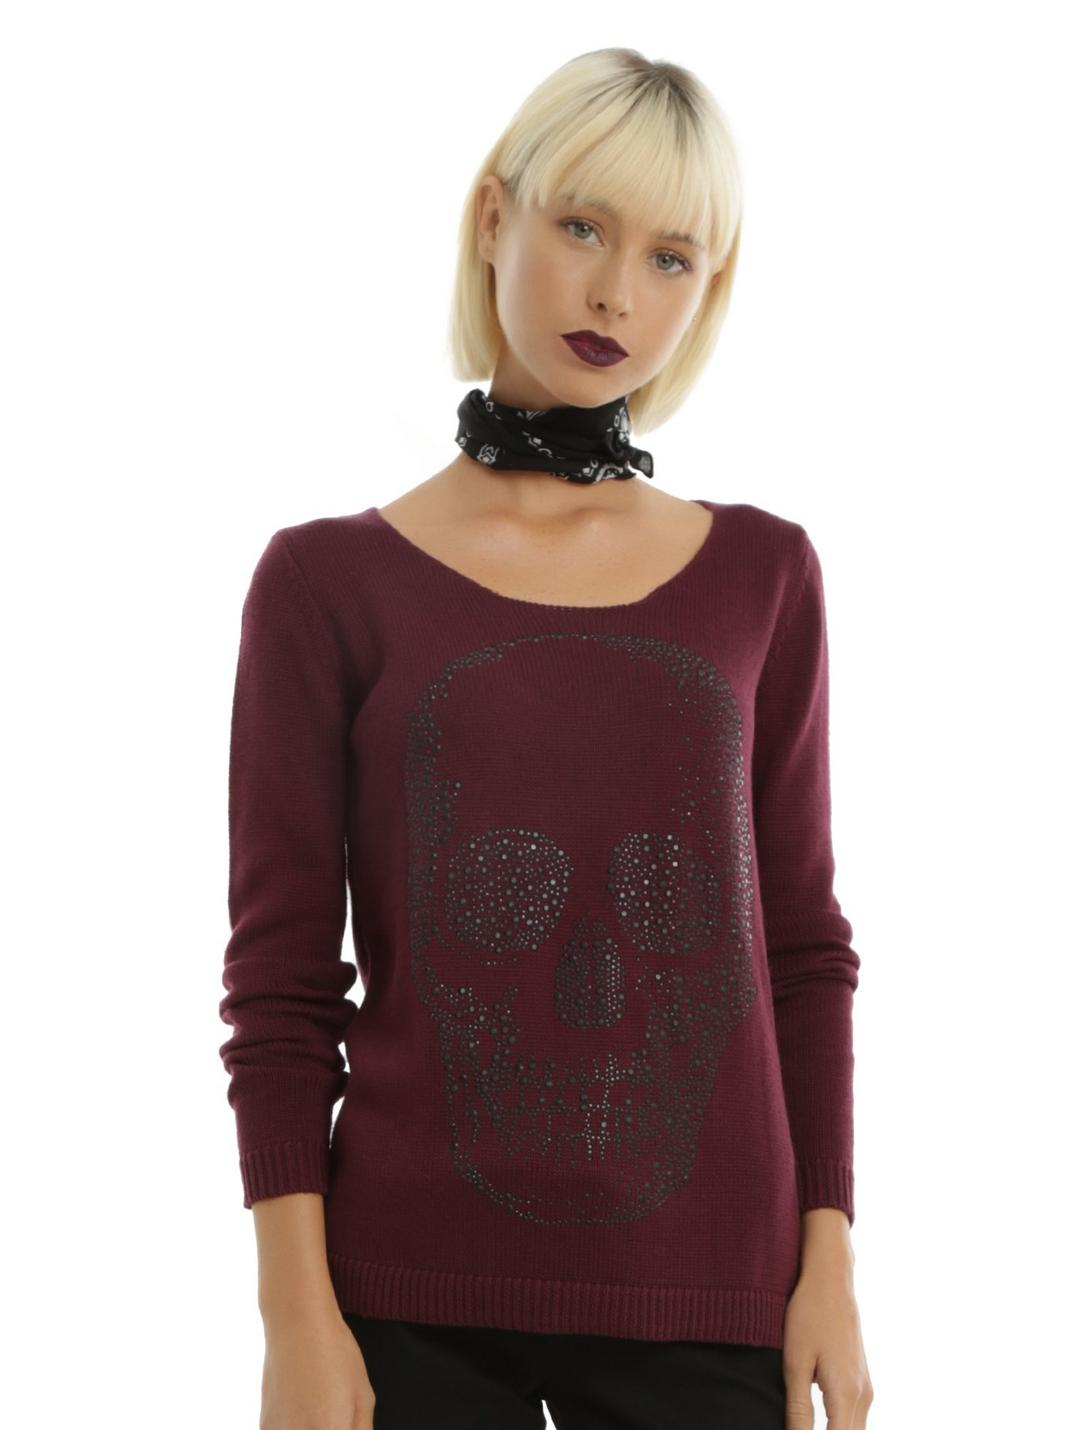 Hematite Bling Skull Maroon Crisscross Back Girls Sweater, BURGUNDY, hi-res